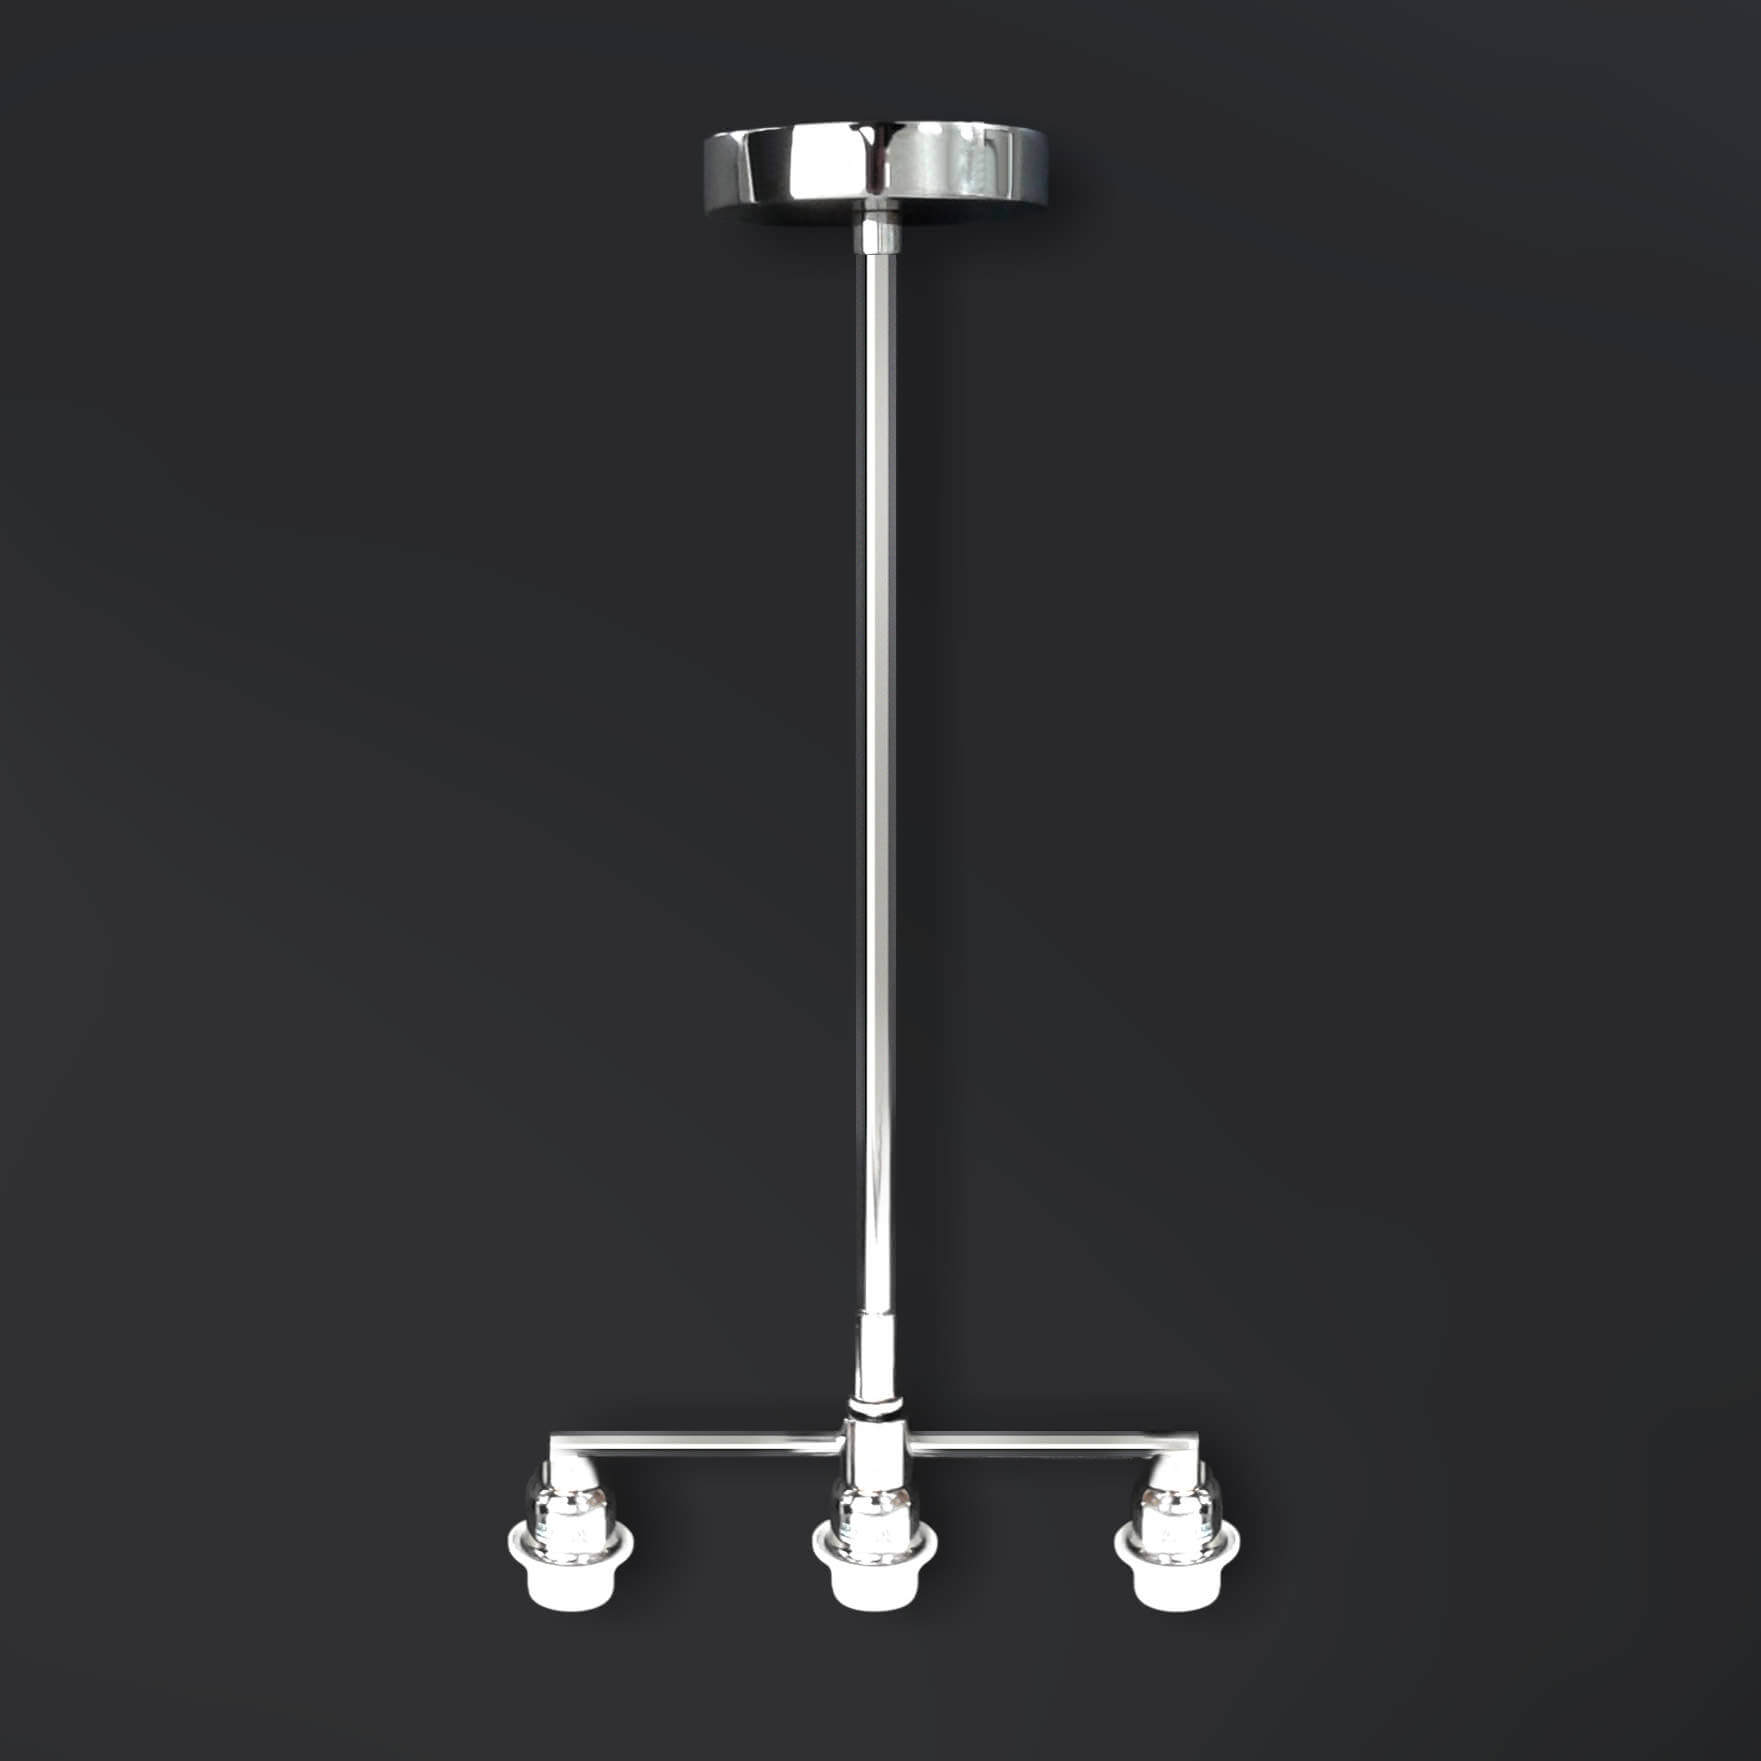 Купить Подвесной светильник Suspension Metal Fitting в интернет-магазине roooms.ru